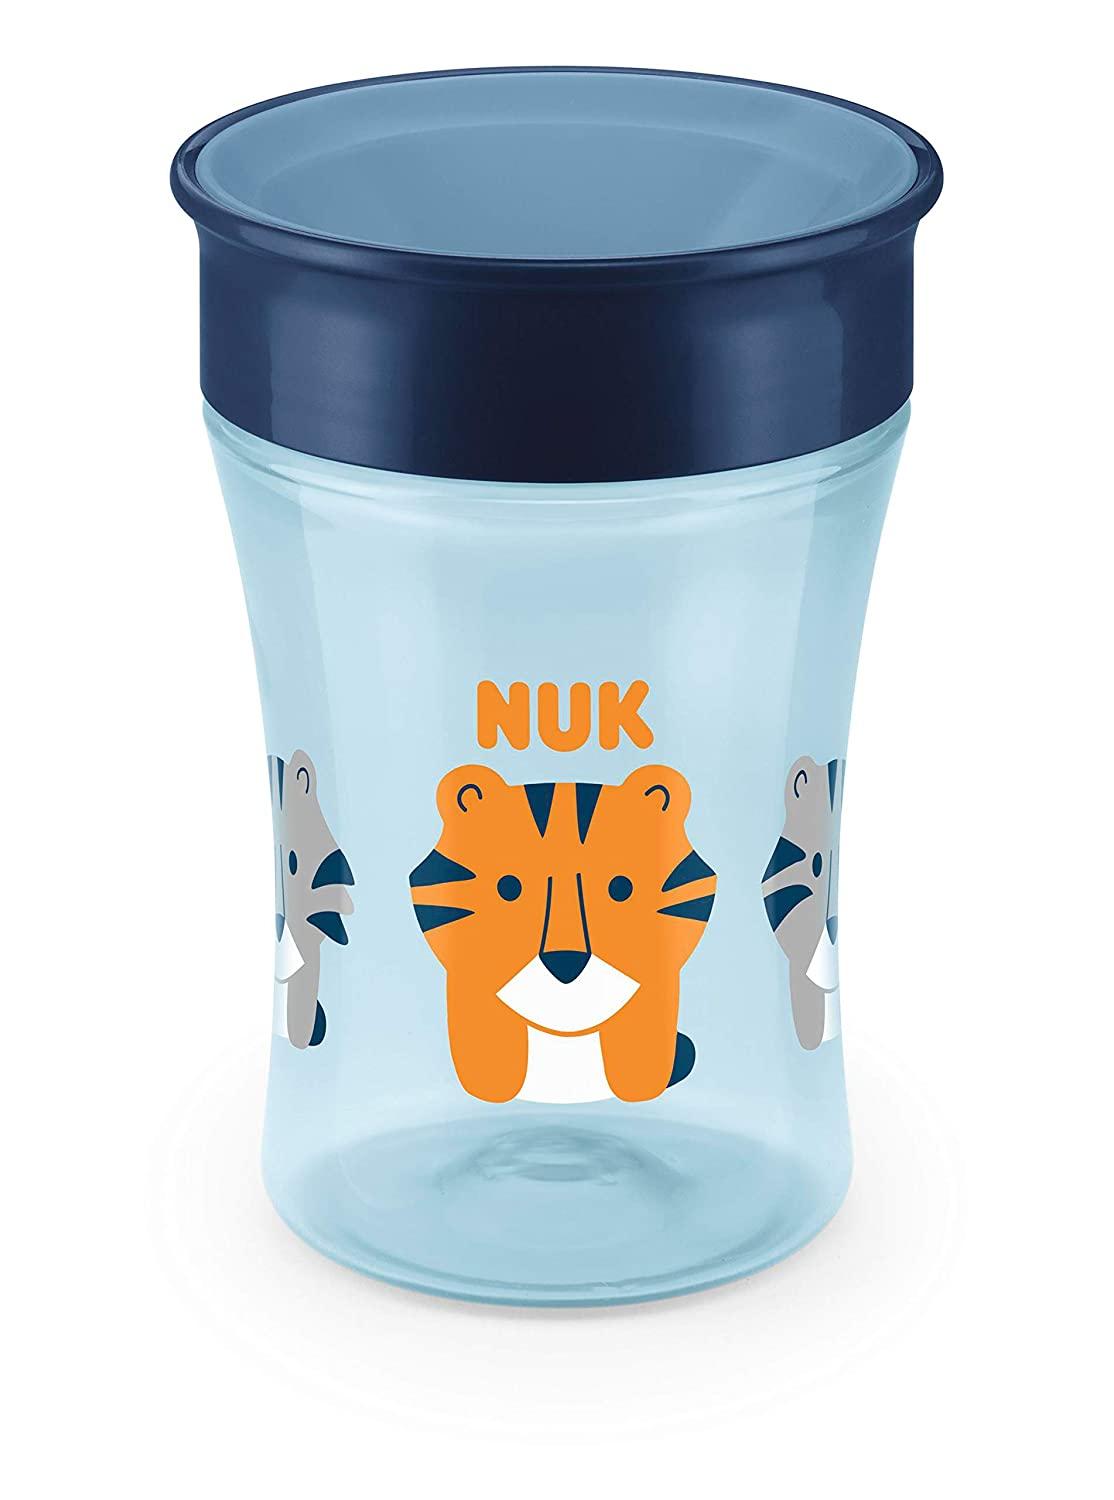 NUK Evolution 360 Cup Blue 8+ Months 1 Cup 8 oz (240 ml)